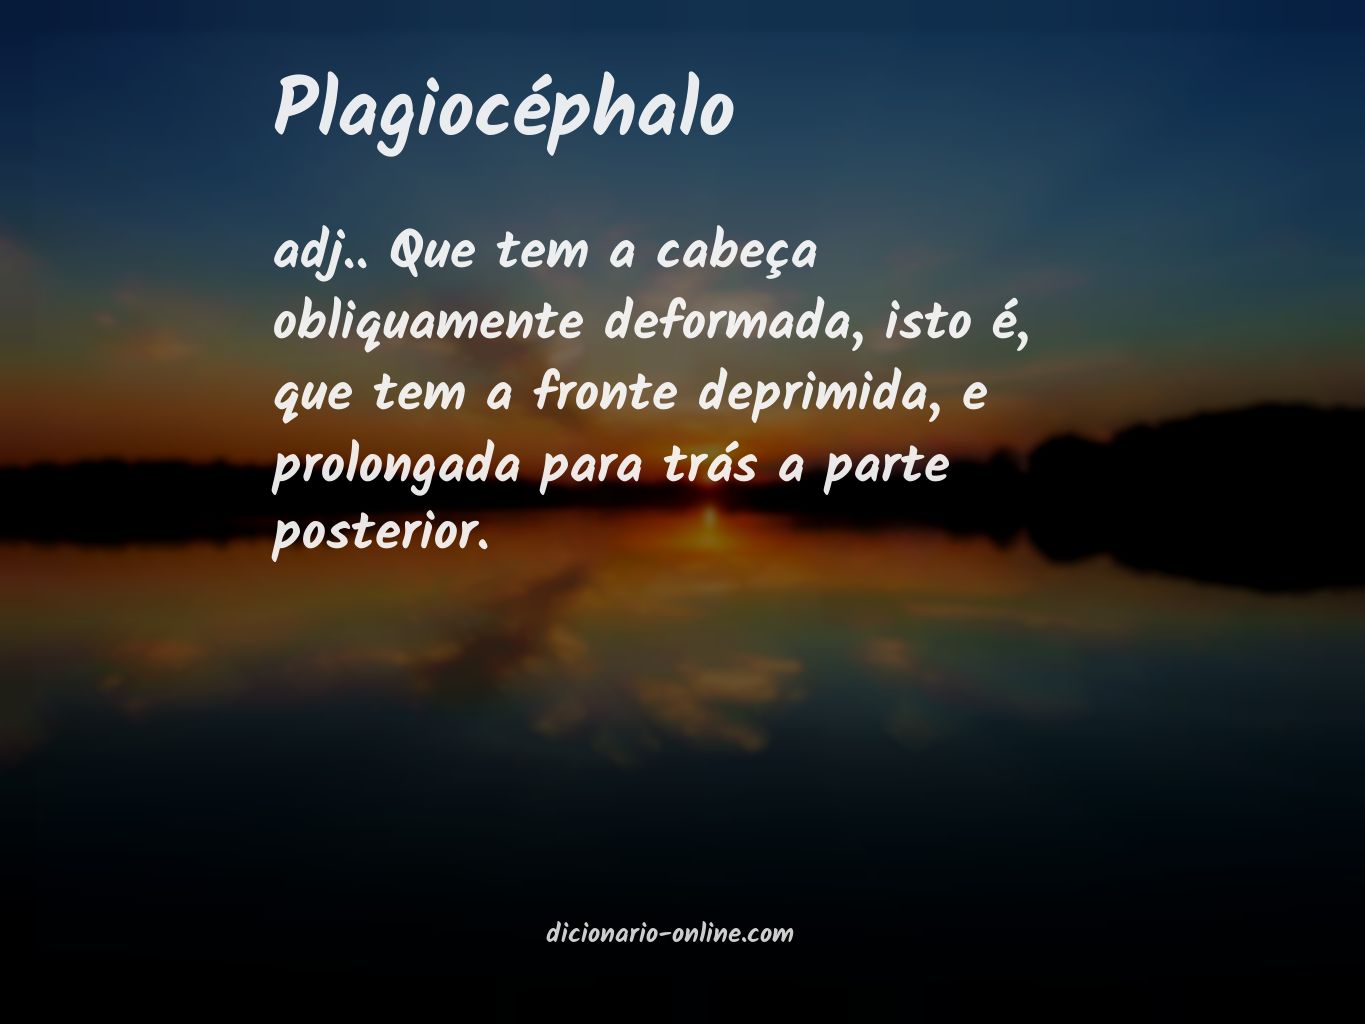 Significado de plagiocéphalo